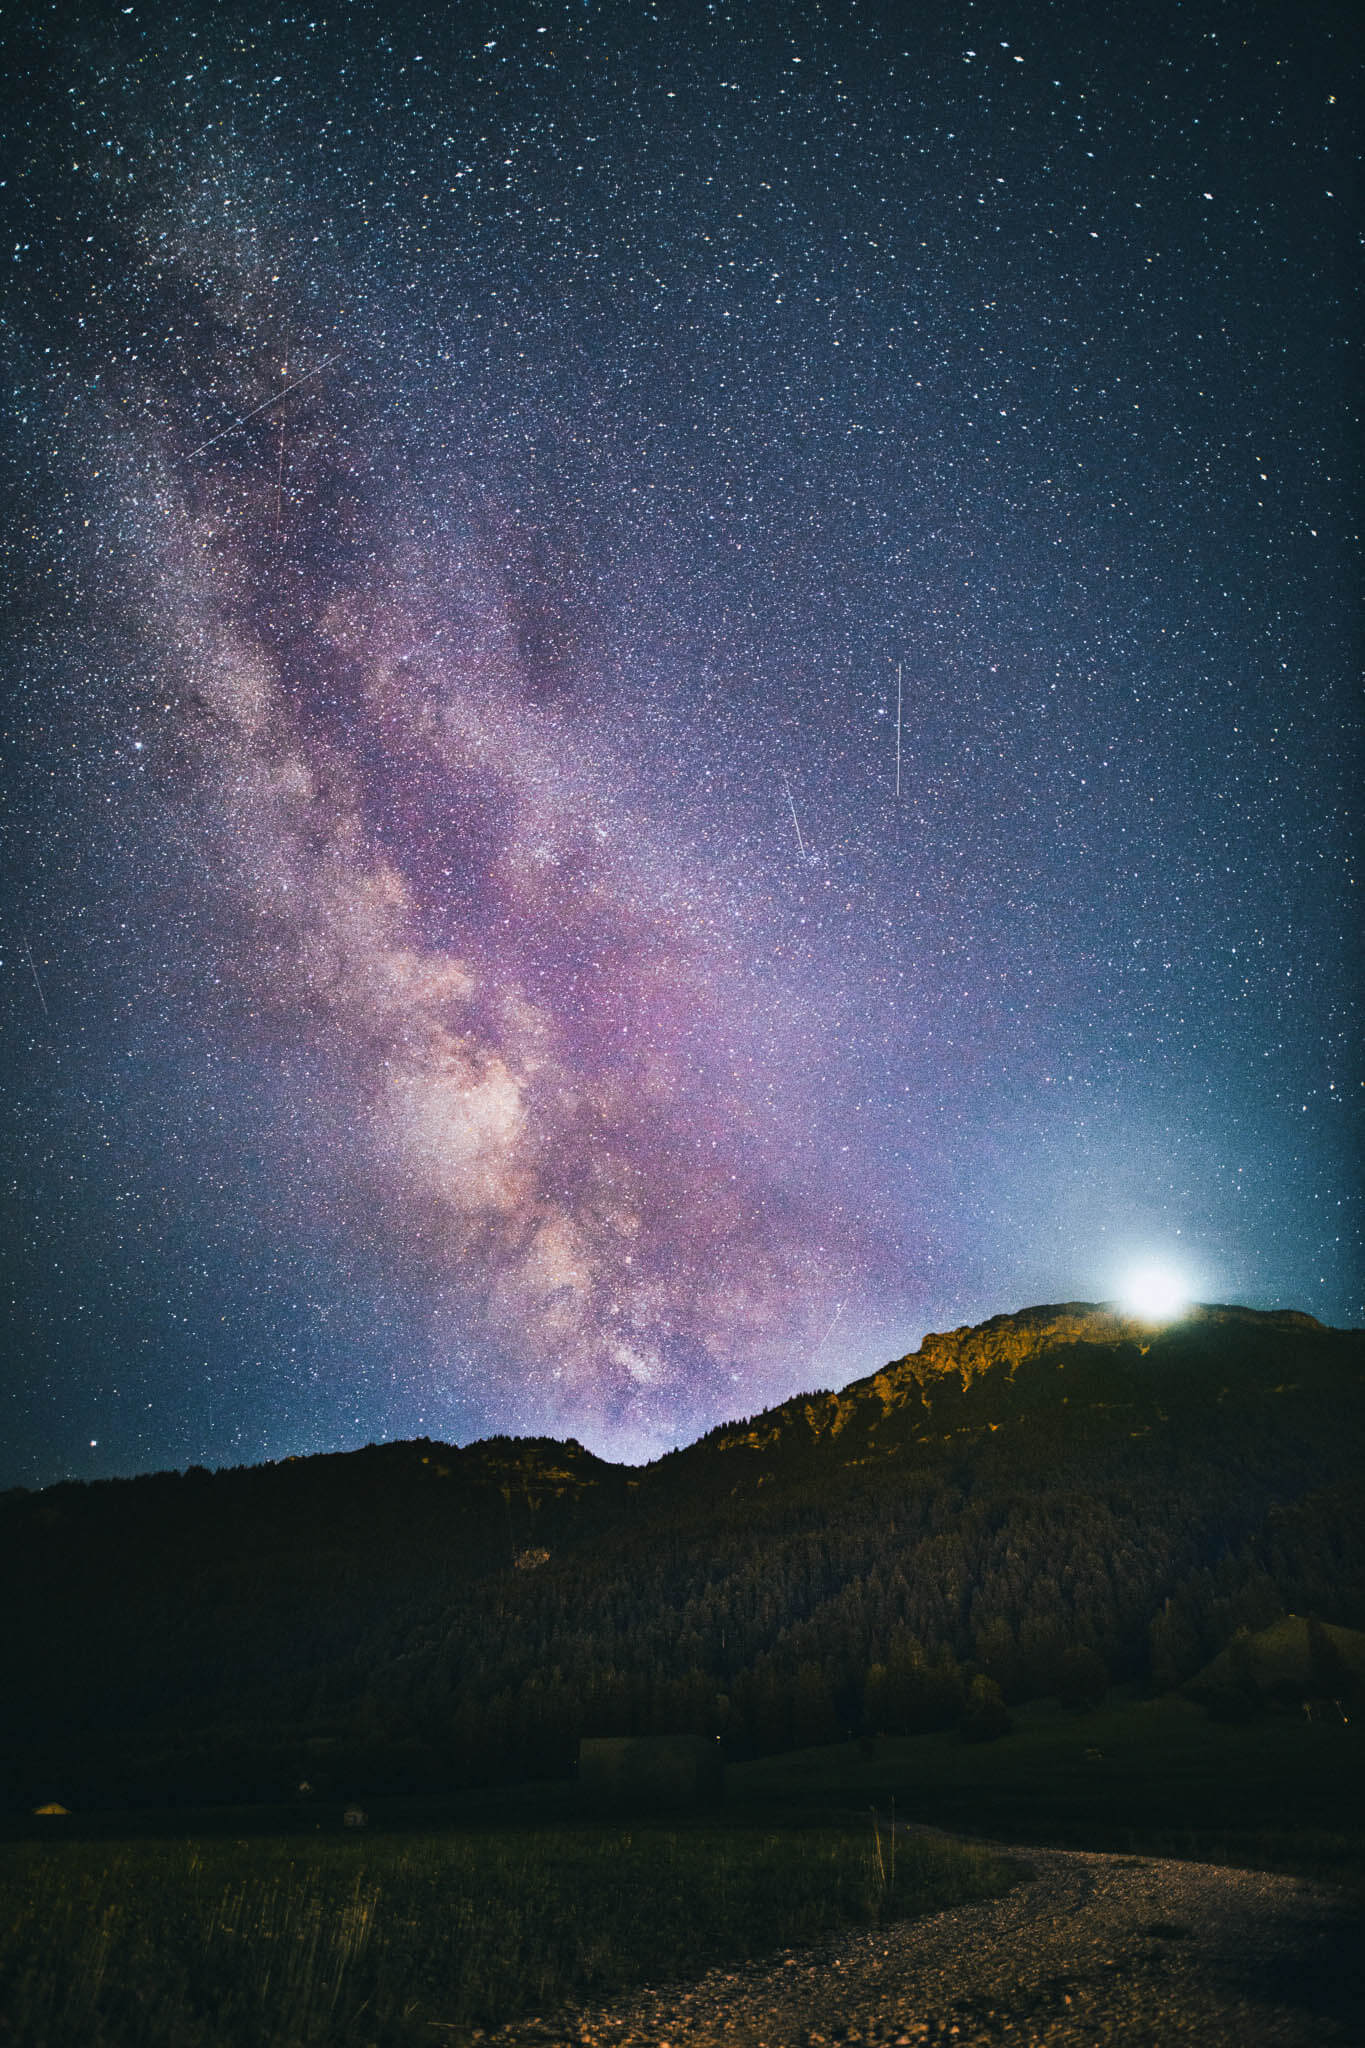 Sterne und Milchstraße fotografieren: Anleitung, Einstellungen, Tipps & Tricks für Fotos vom Sternenhimmel